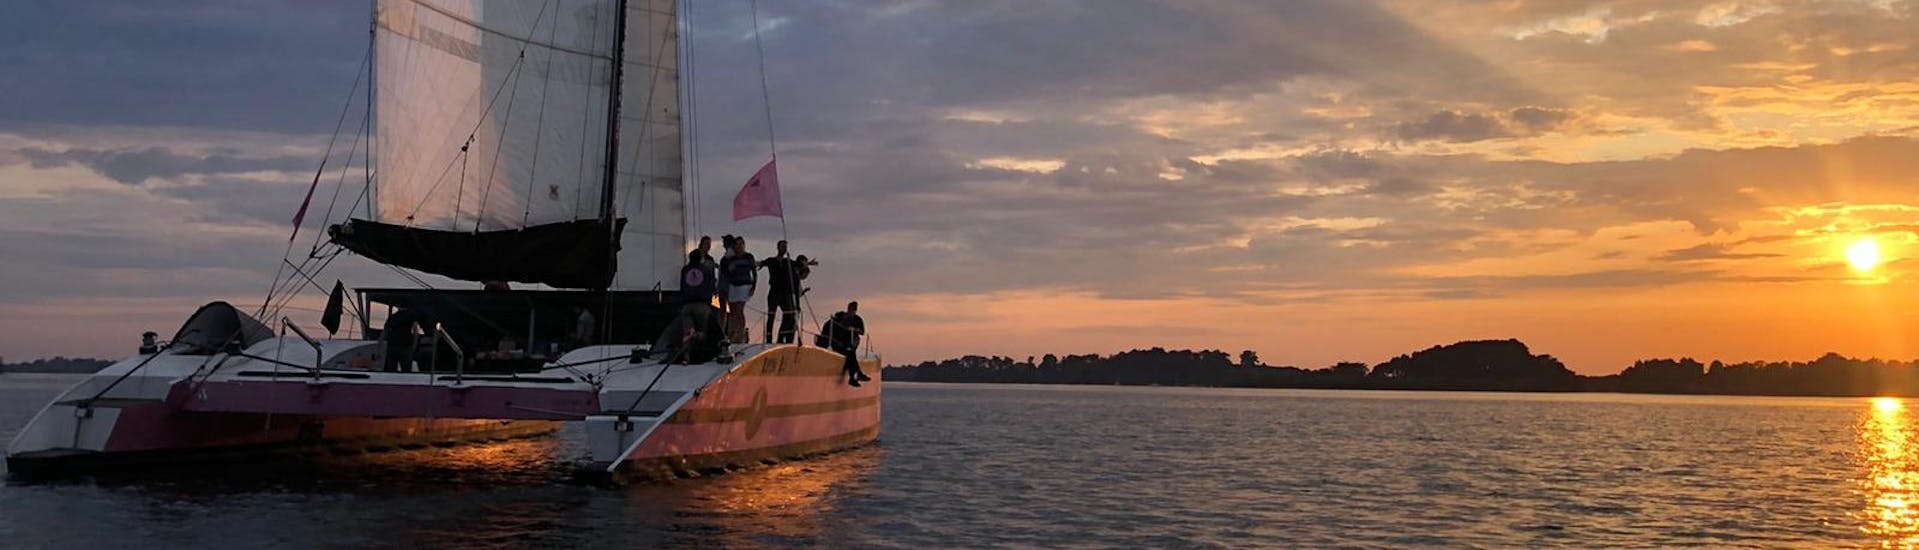 Balade en bateau au coucher du soleil dans la baie de Concarneau avec apéritif.